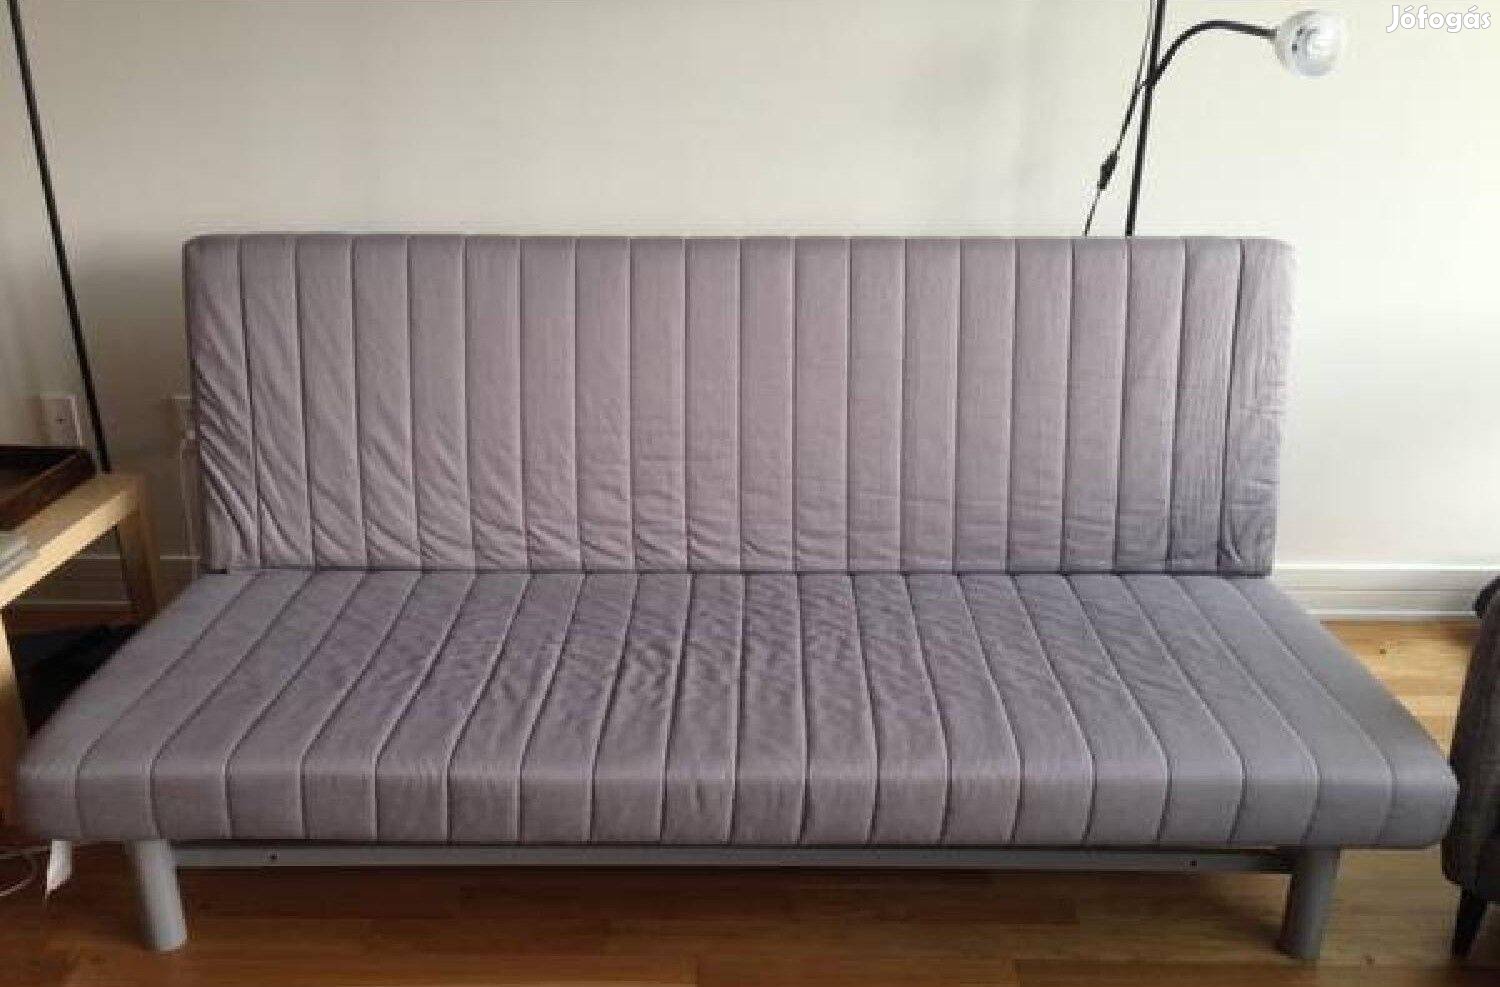 Ikea Beddinge kanapéágy 140x200/70x200cm ágyneműtartóval eladó